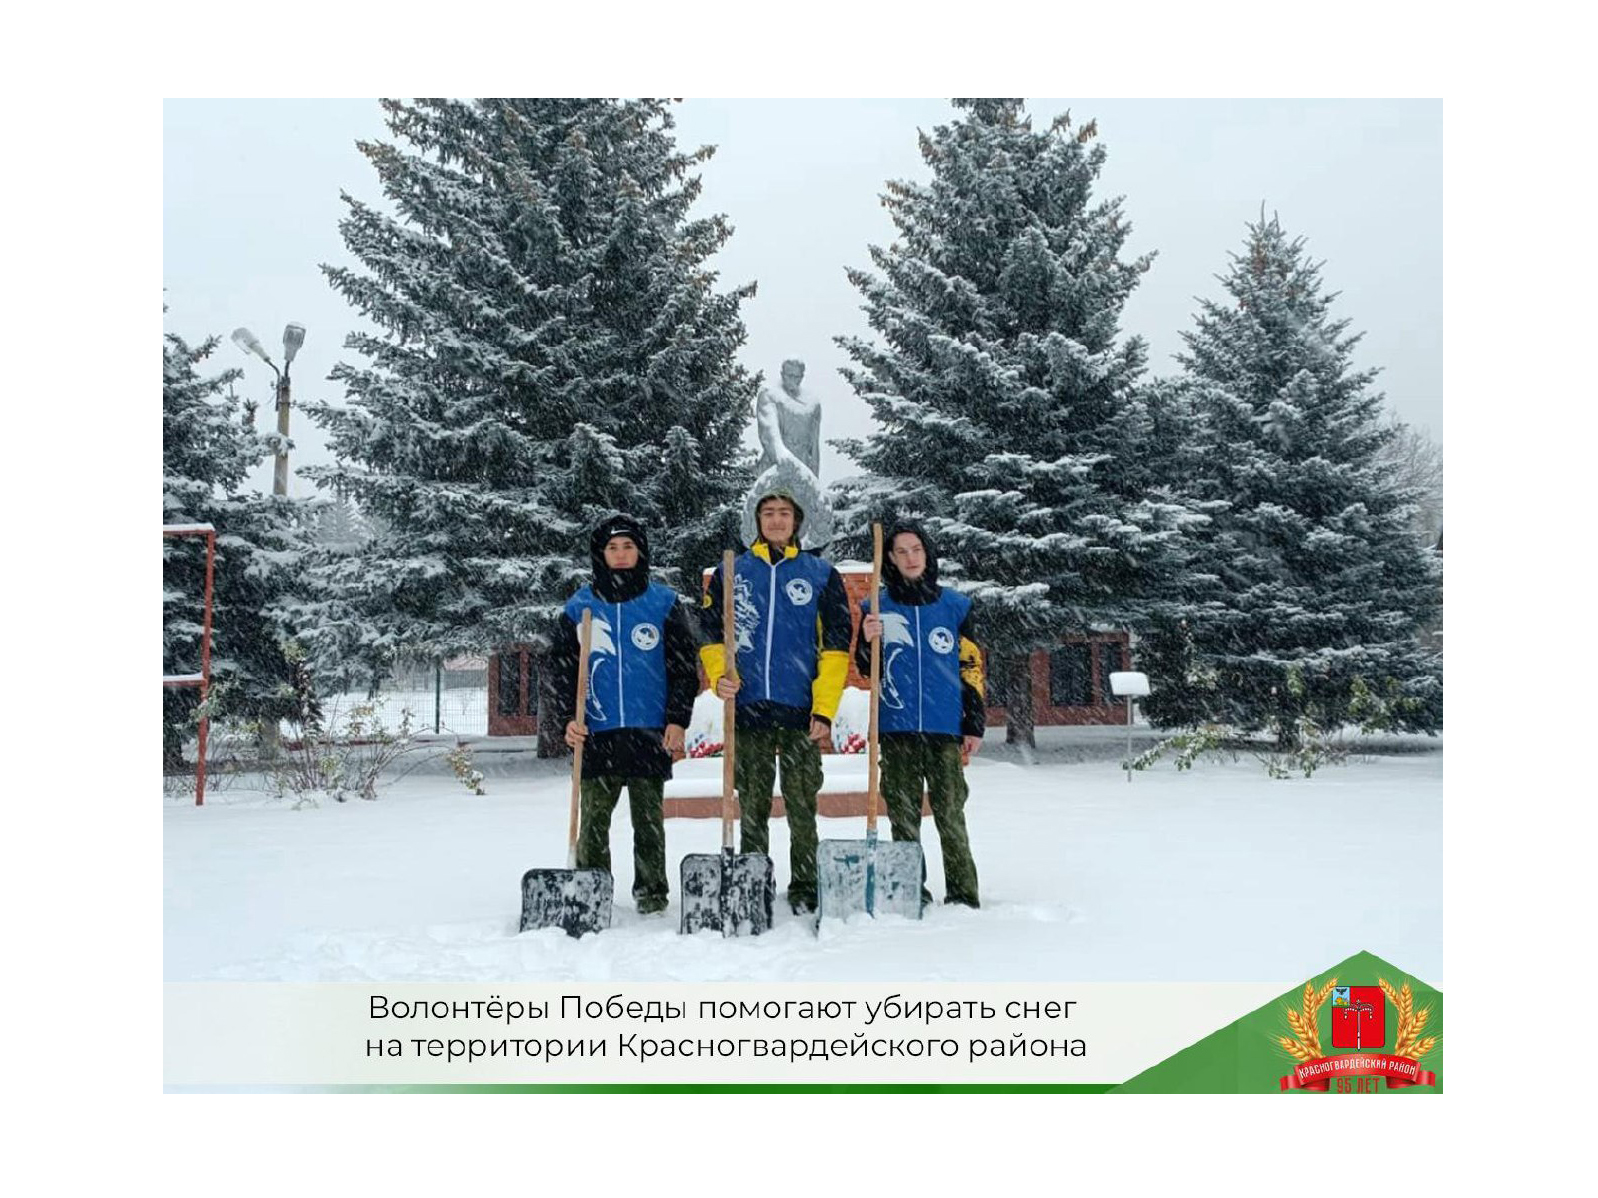 Волонтёры Победы помогают убирать снег на территории Красногвардейского района.